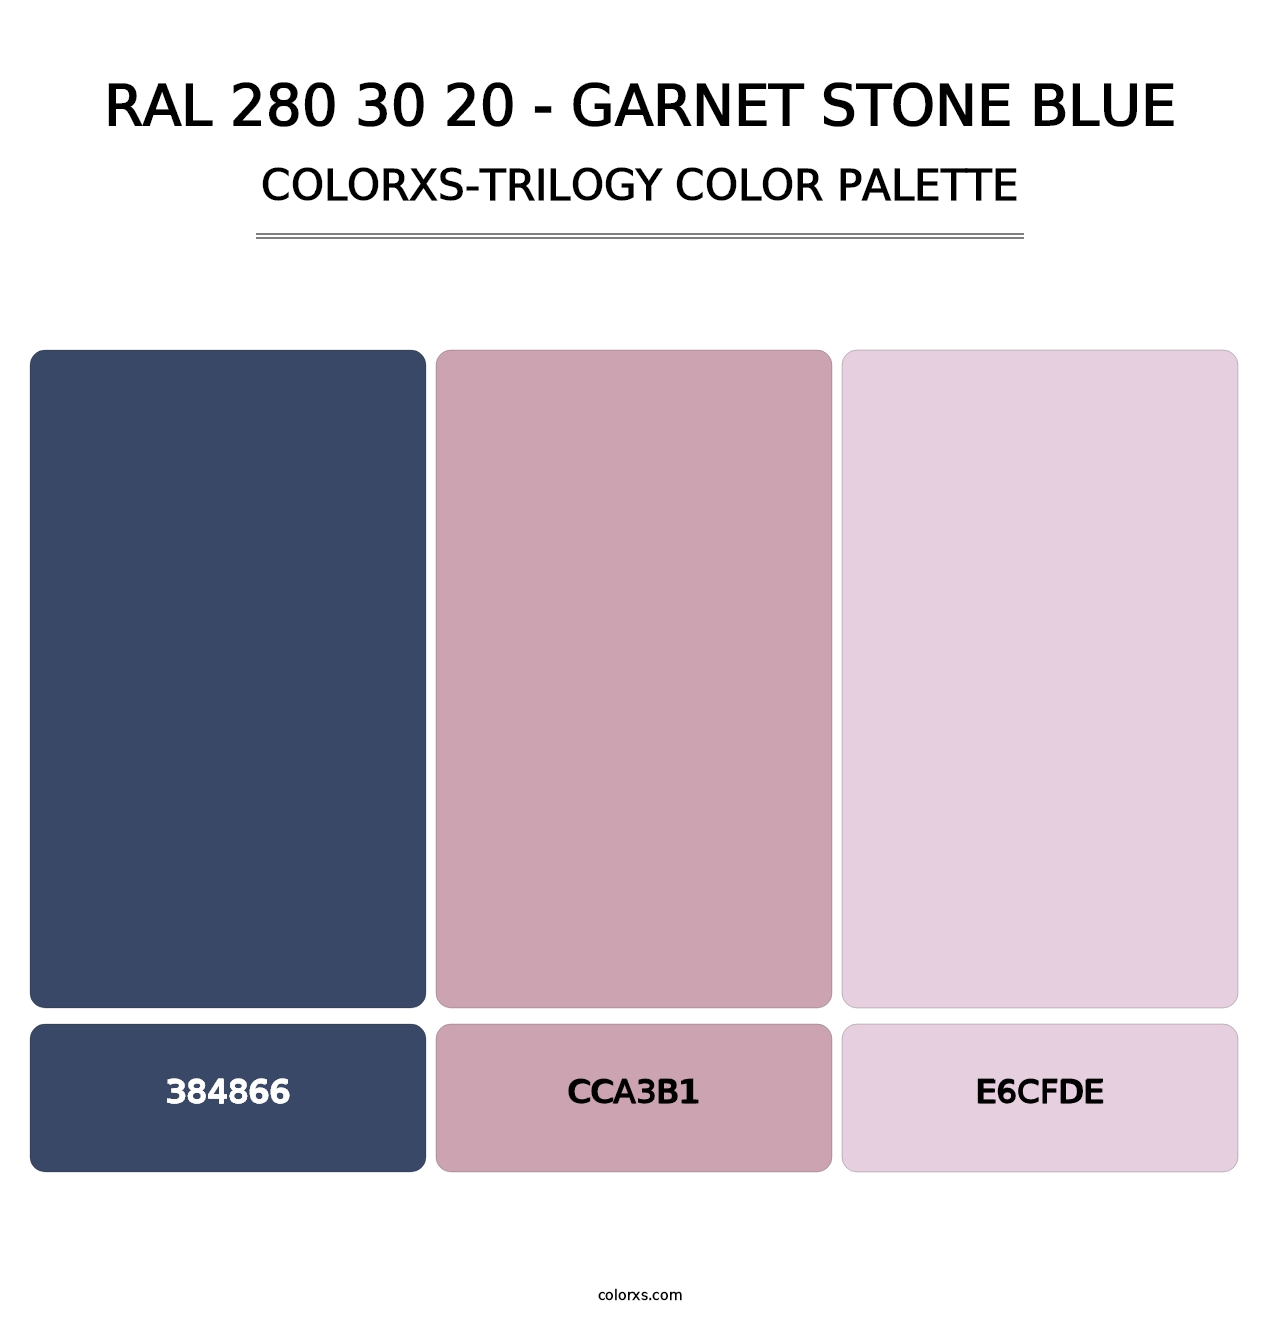 RAL 280 30 20 - Garnet Stone Blue - Colorxs Trilogy Palette